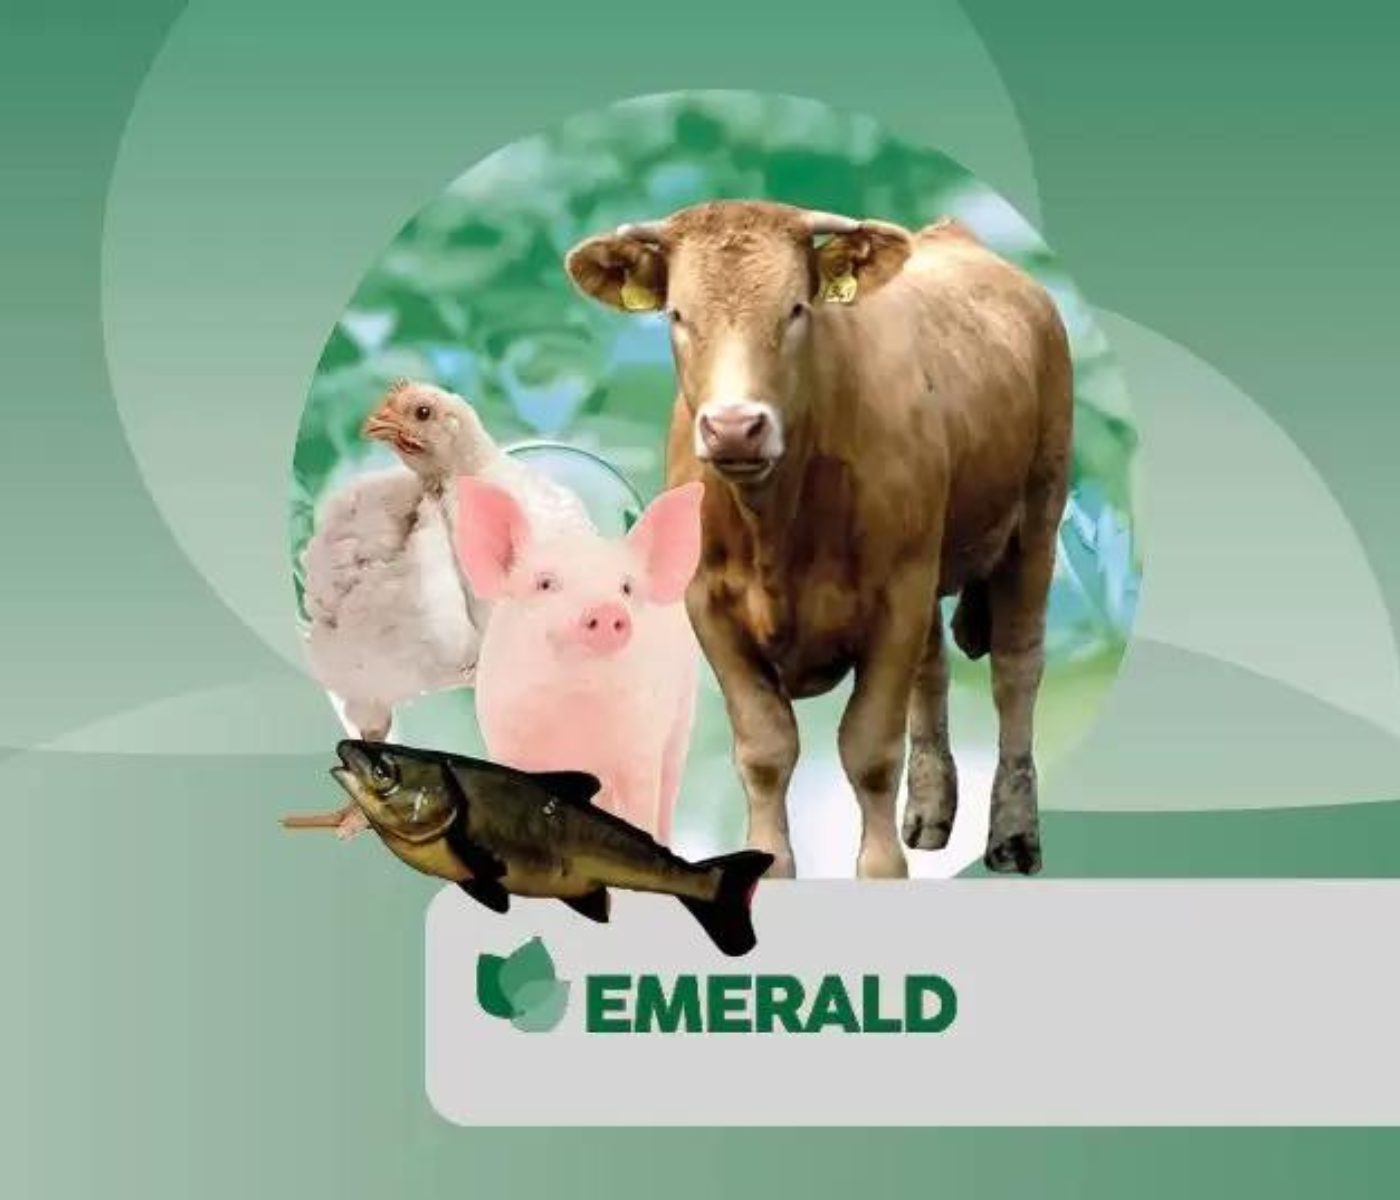 Presentamos Emerald, un fitogénico activador de la salud y el crecimiento